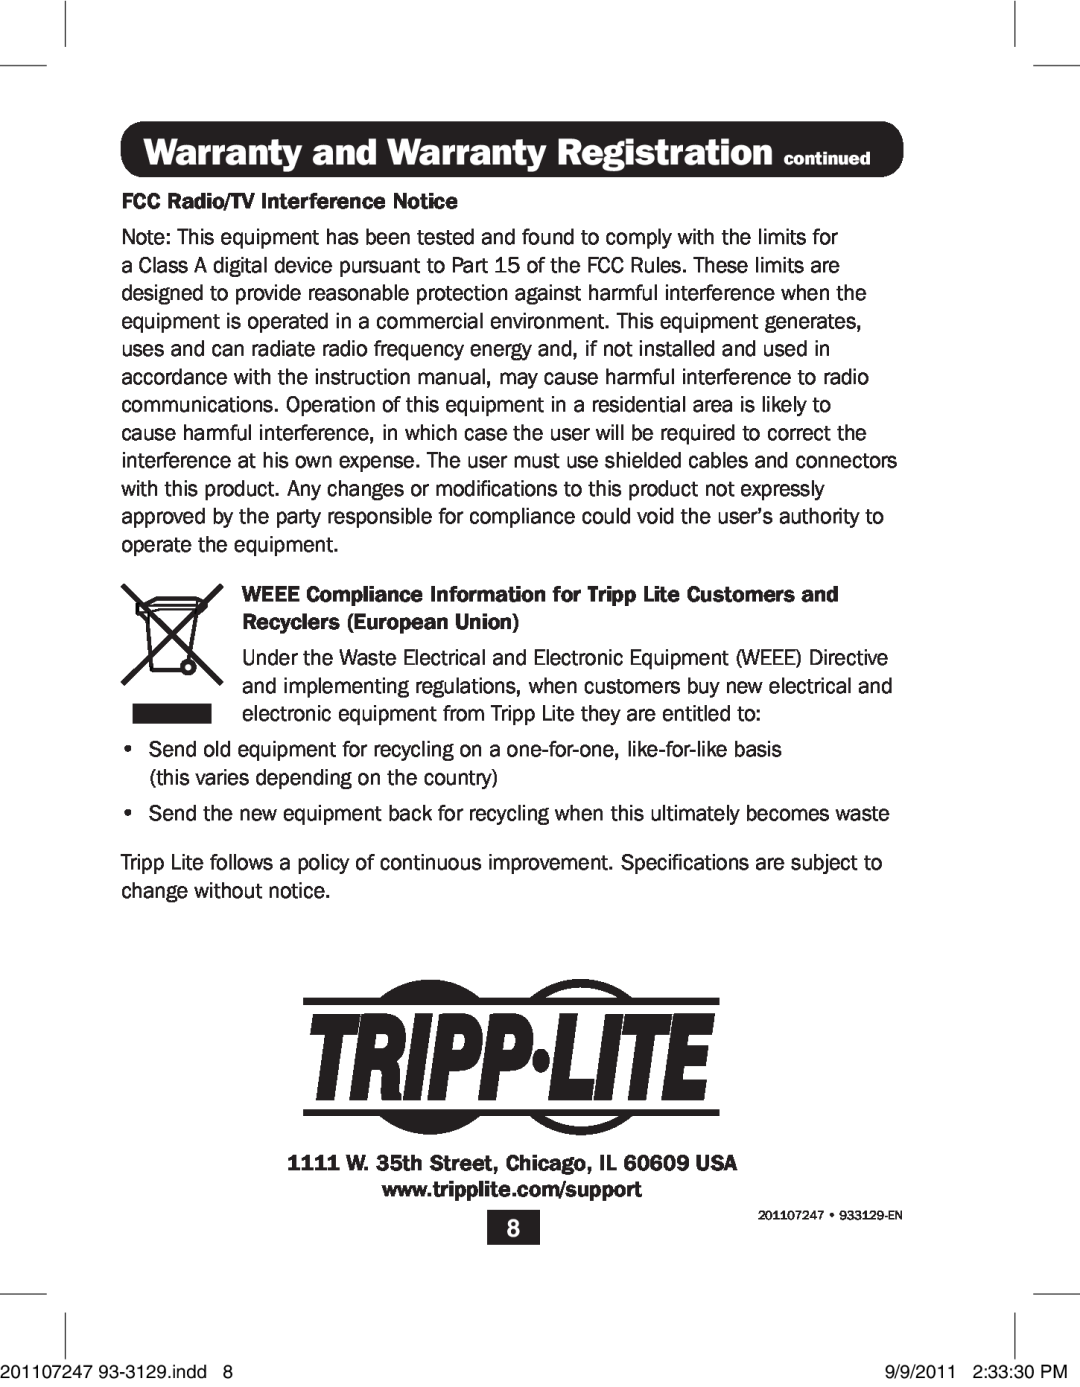 Tripp Lite B004-DUA4-K-R owner manual Warranty and Warranty Registration continued, 201107247 933129-EN 